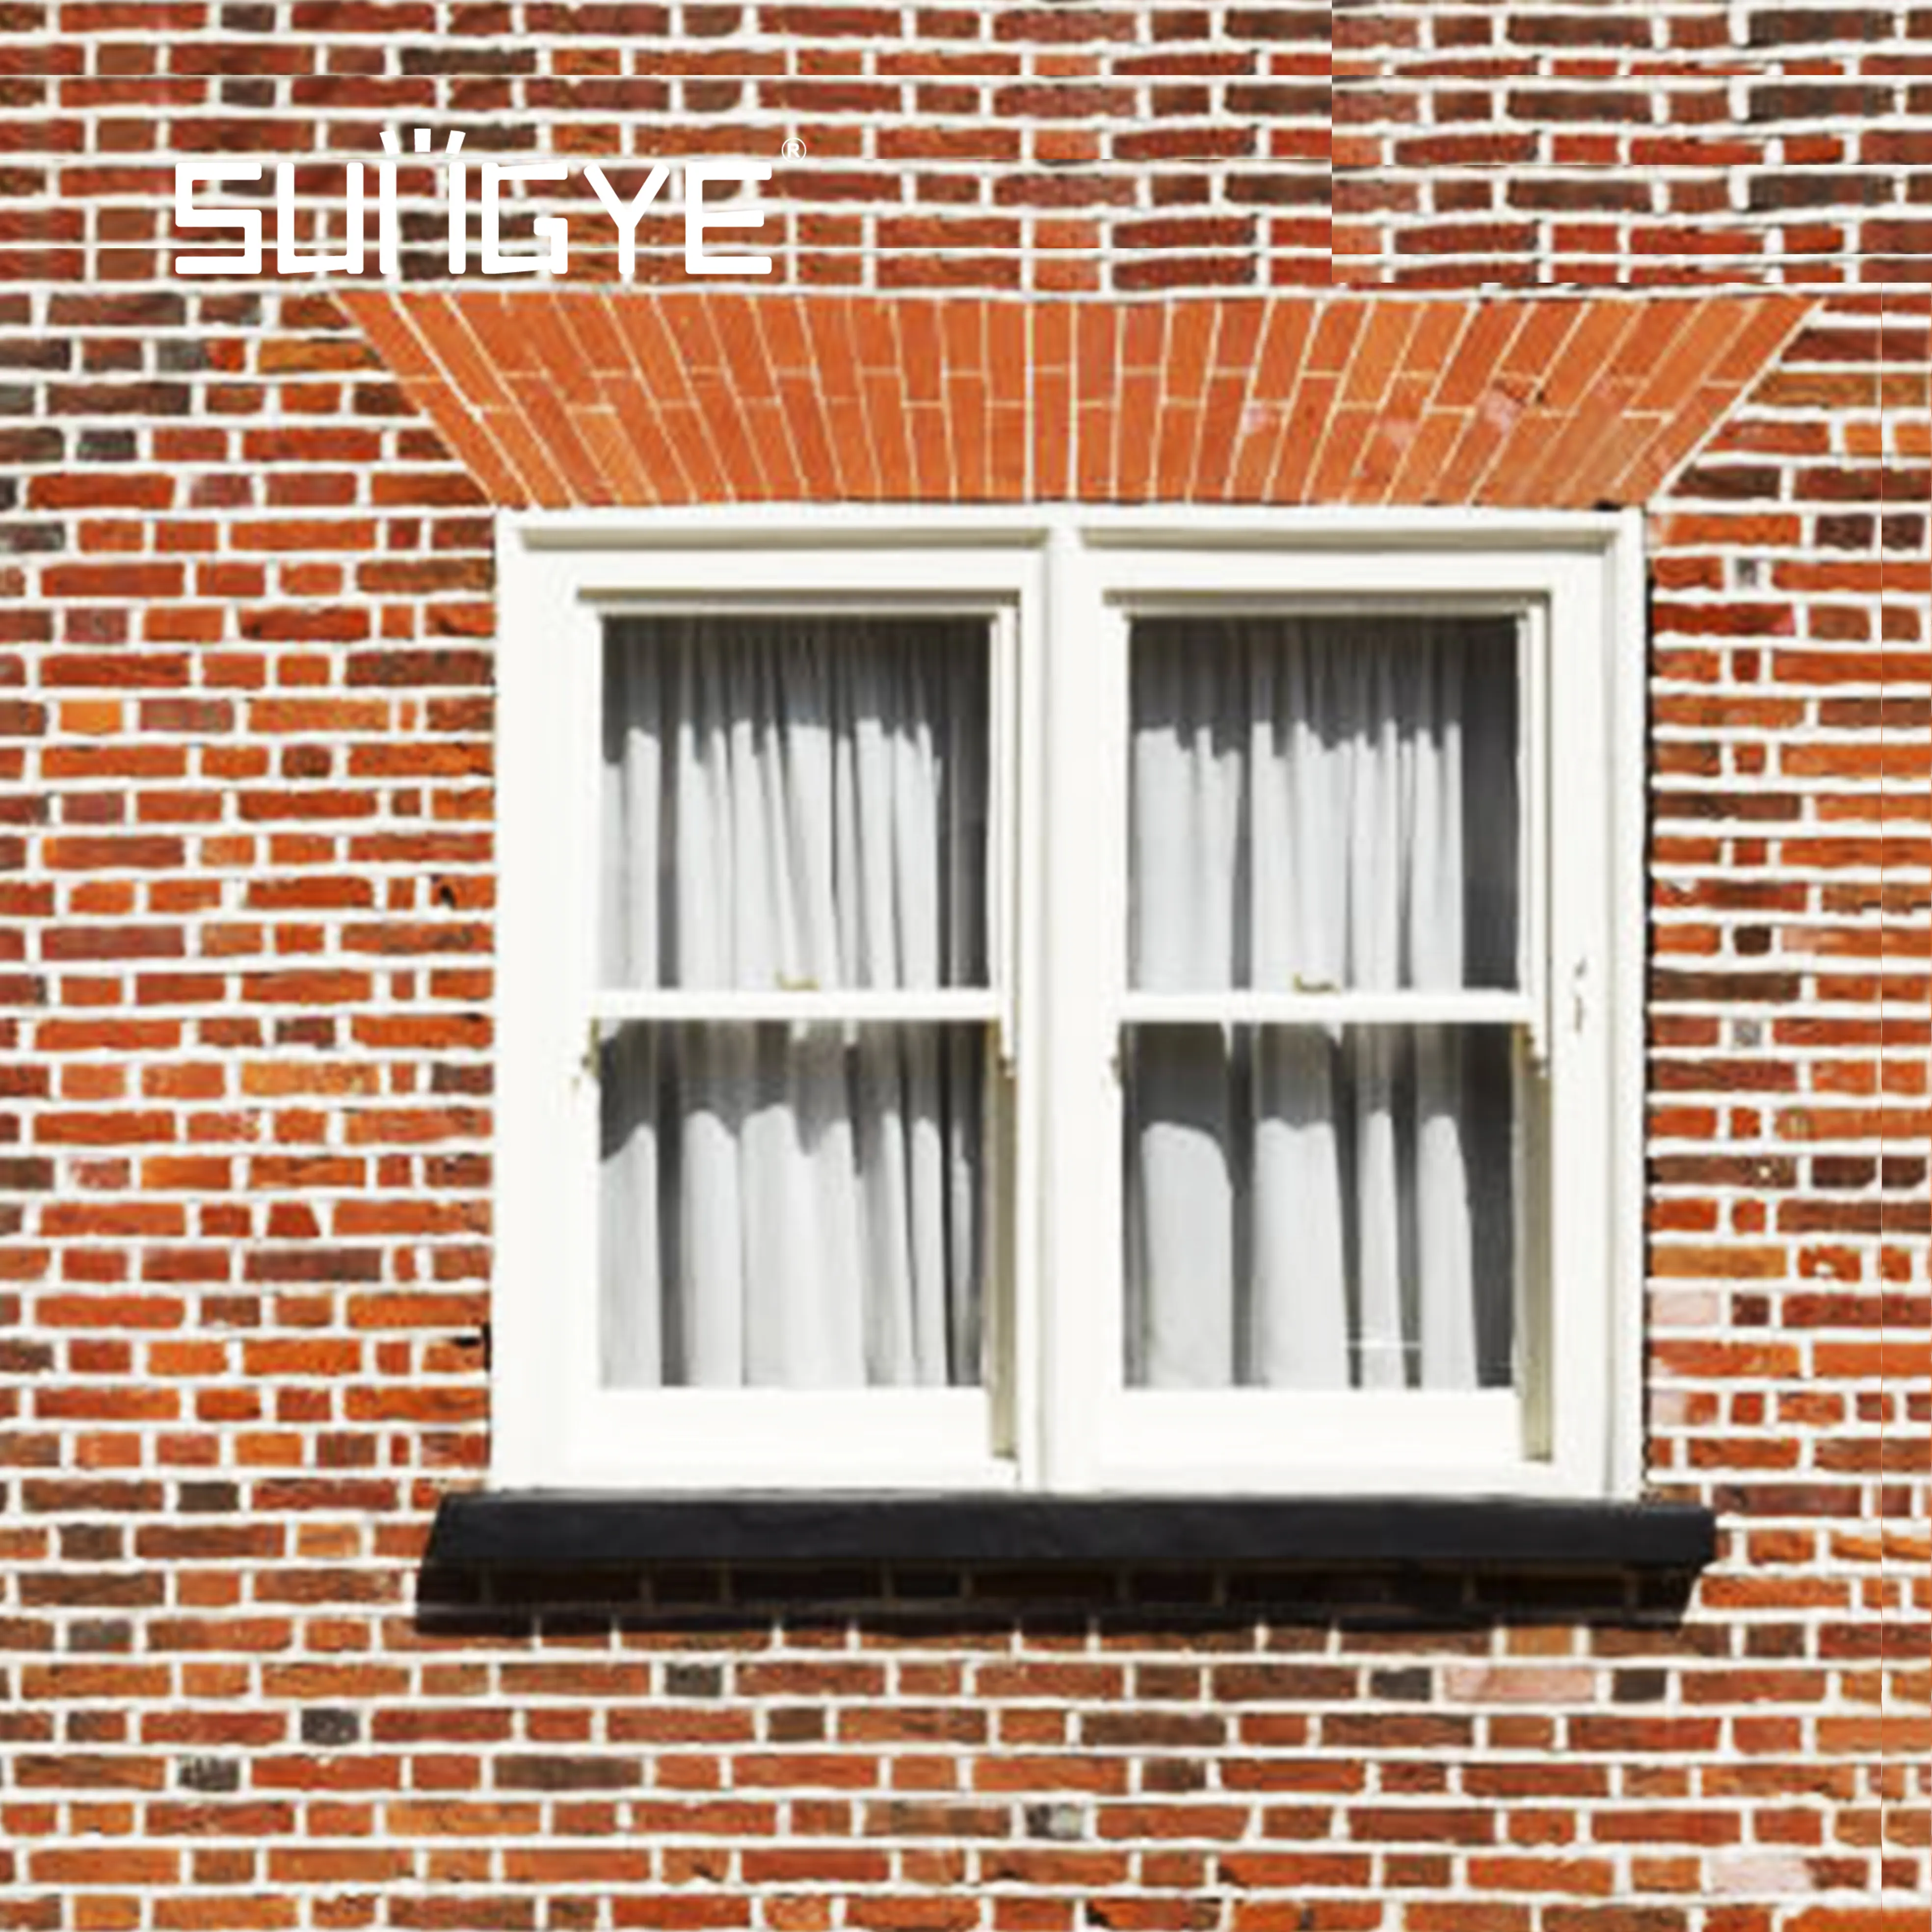 Detail pengupasan cuaca jendela geser vertikal buka terkunci jendela geser dari luar